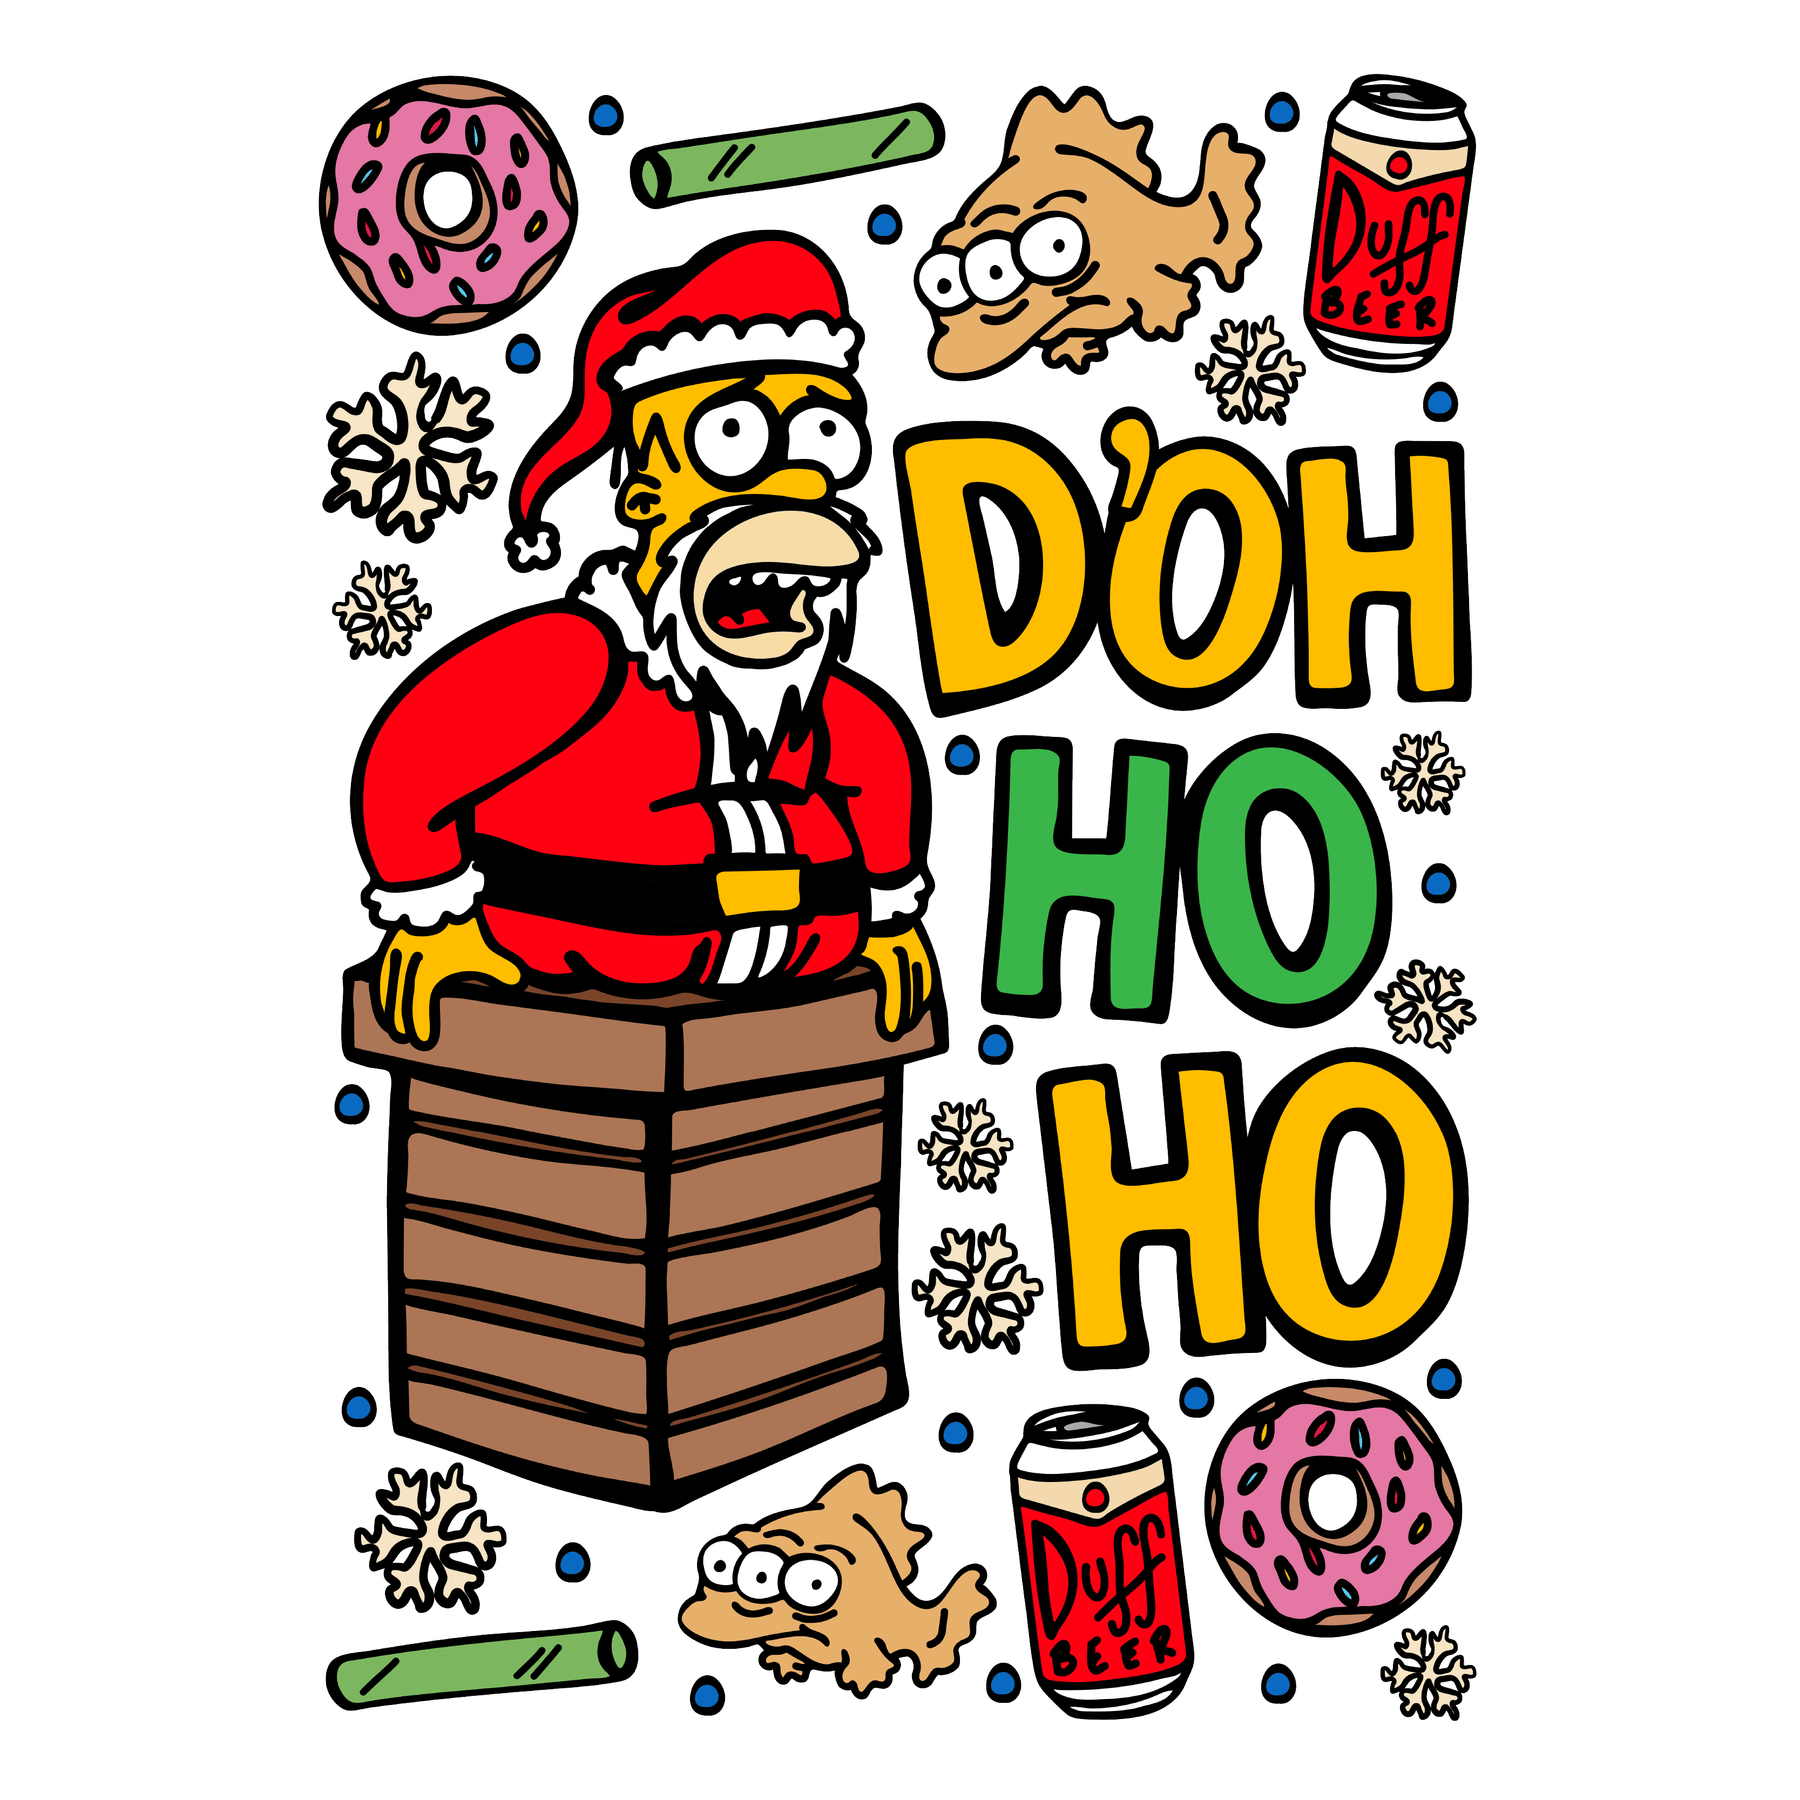 Doh Ho Ho 🎅🍩 – Men's T Shirt